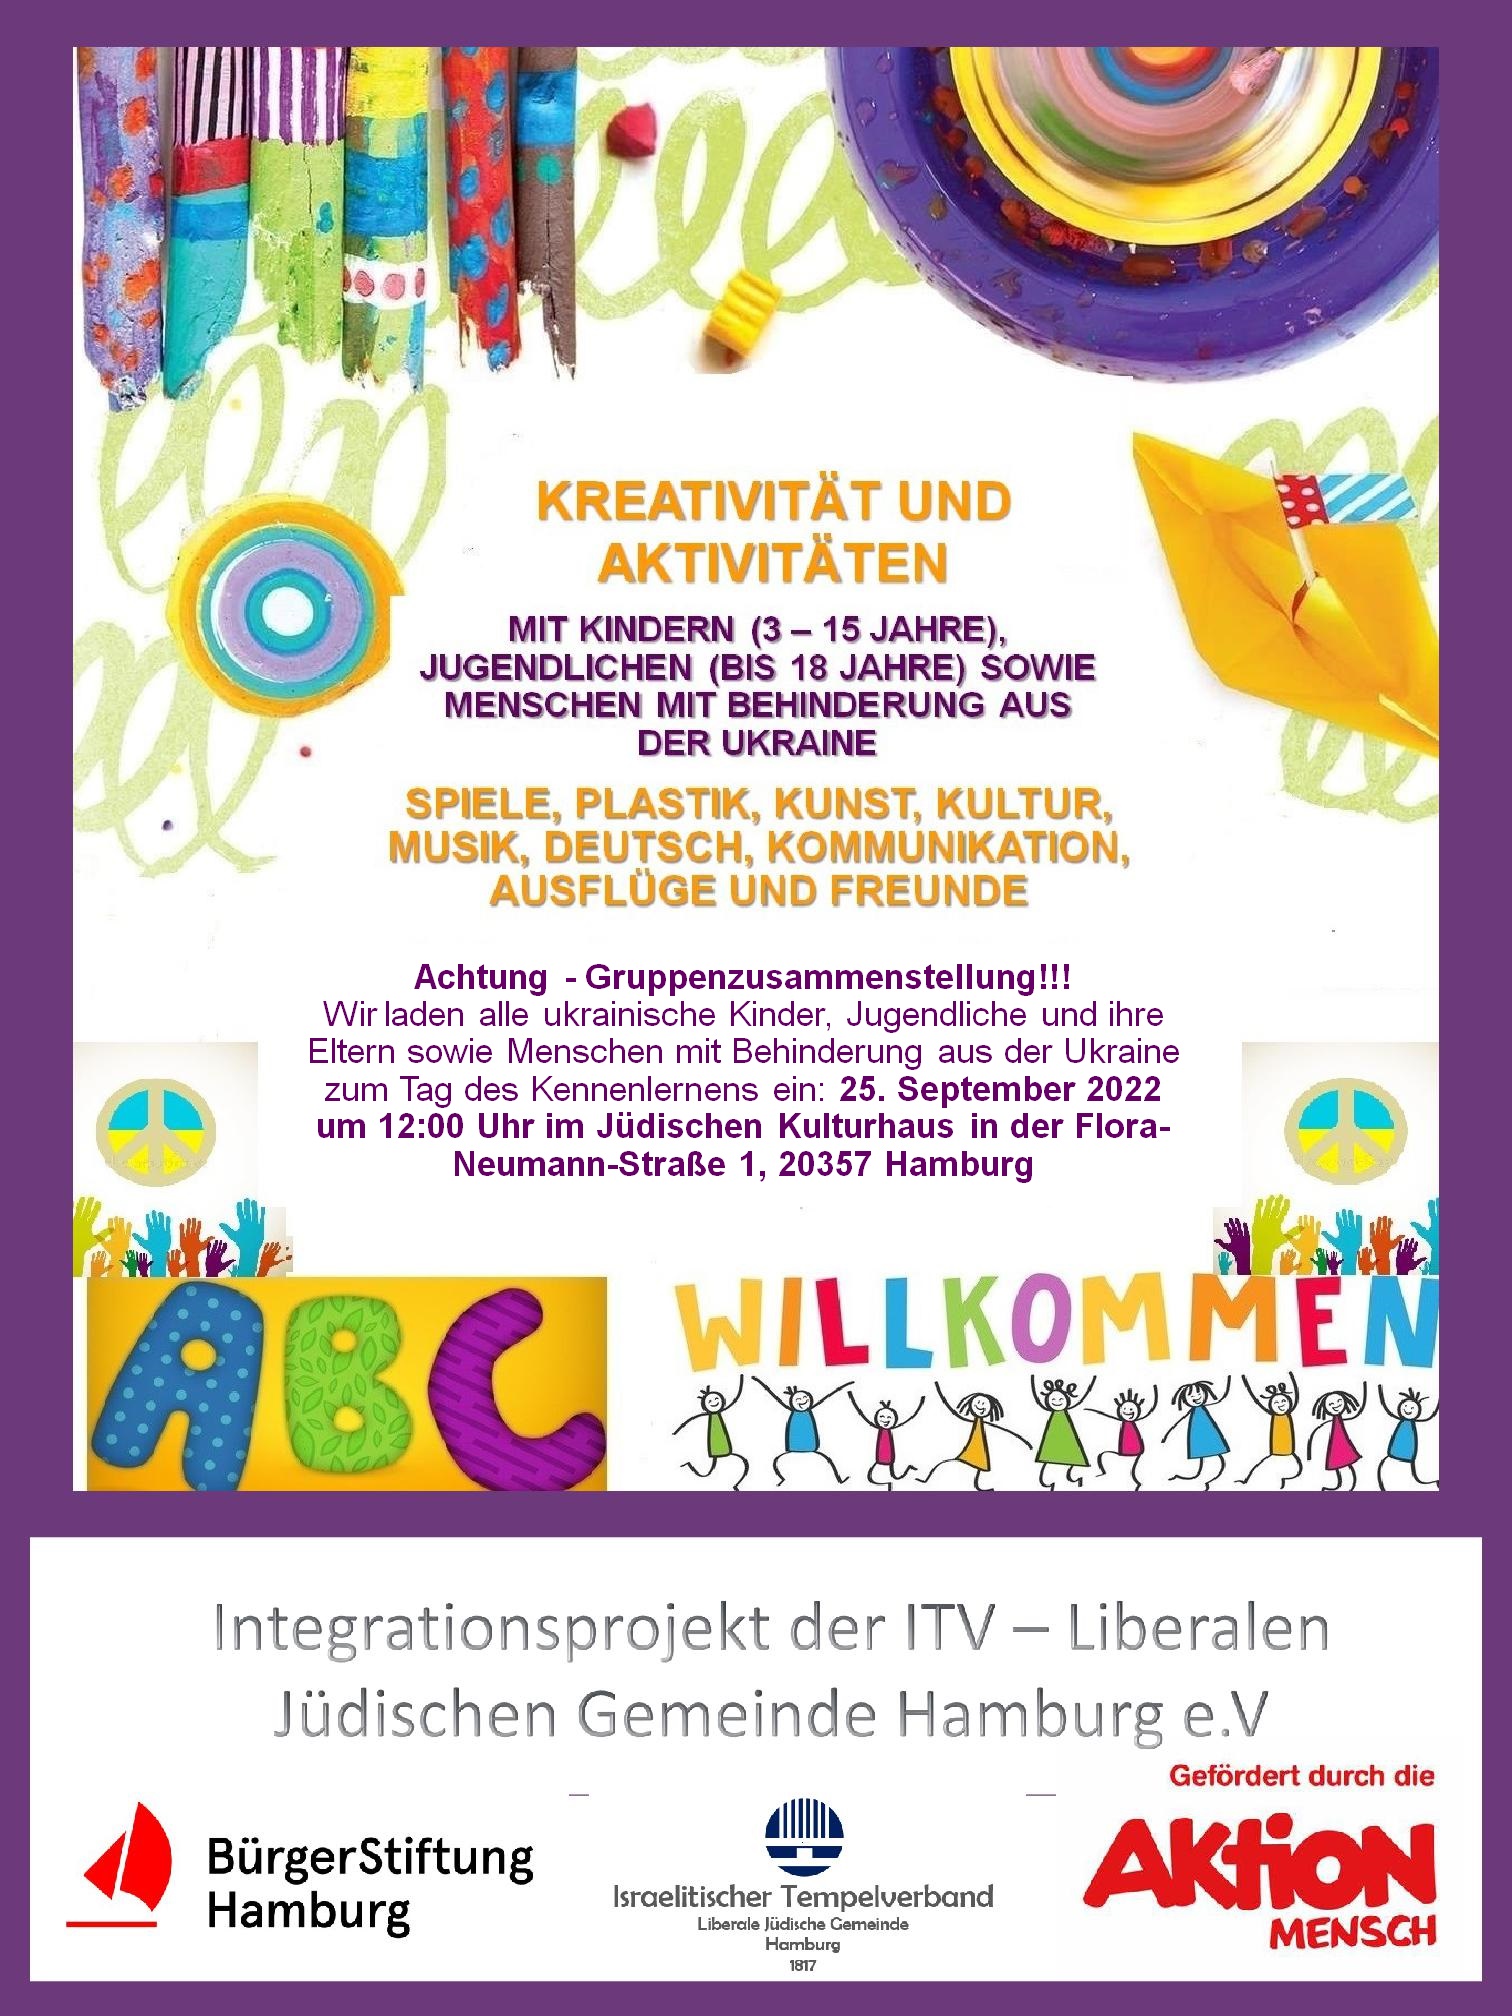 ITVHH: interaktives Kreativ-Angebot für Kinder, Jugendliche und Menschen mit Behinderung